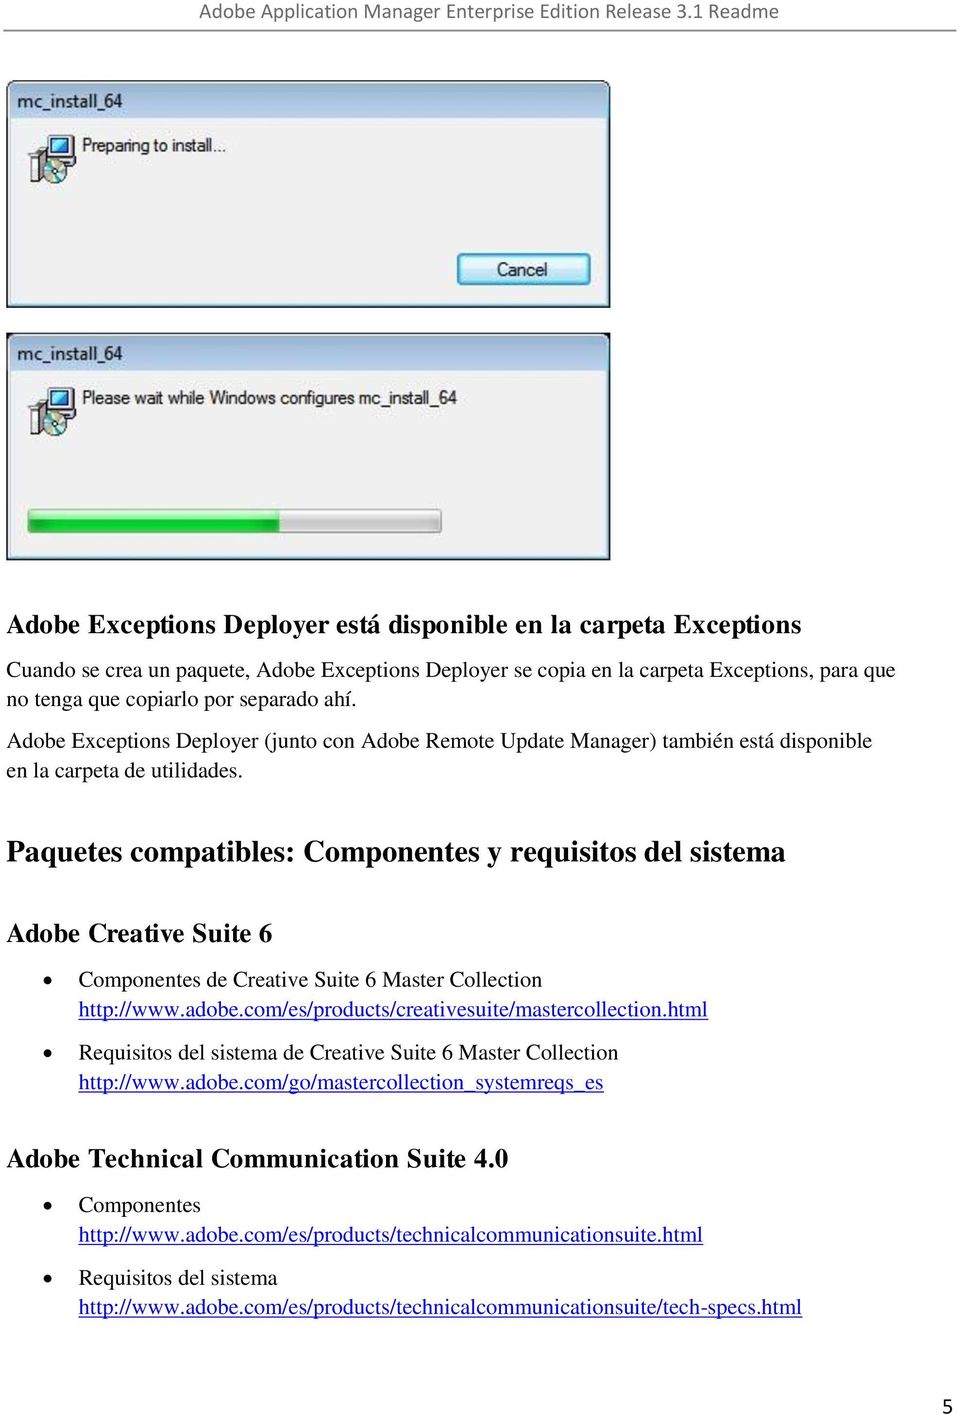 Paquetes compatibles: Componentes y requisitos del sistema Adobe Creative Suite 6 Componentes de Creative Suite 6 Master Collection http://www.adobe.com/es/products/creativesuite/mastercollection.